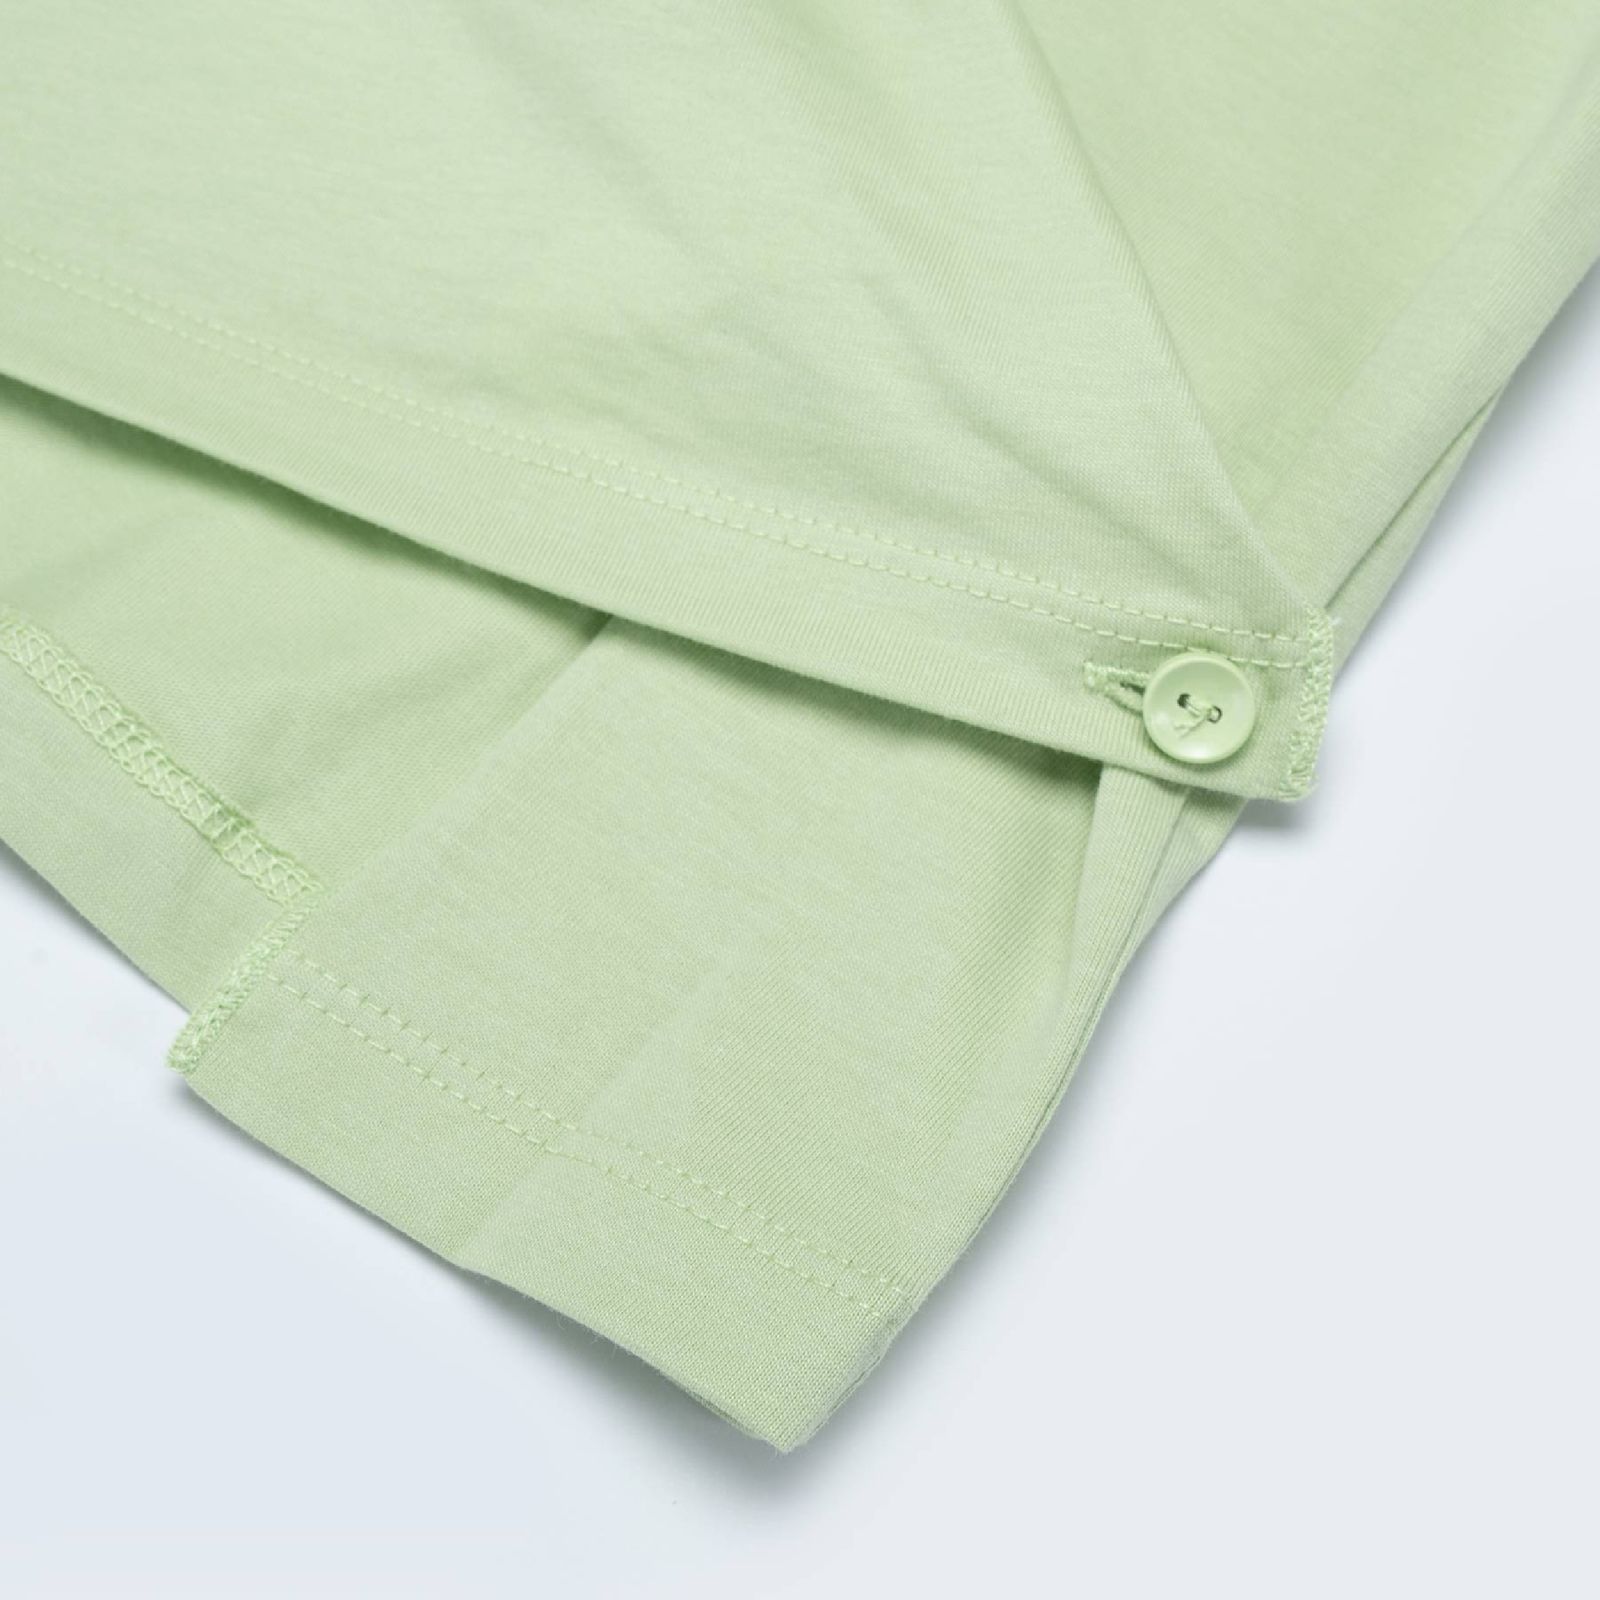 تی شرت آستین کوتاه زنانه جین وست مدل یقه گرد کد 1551206 رنگ سبز روشن -  - 3